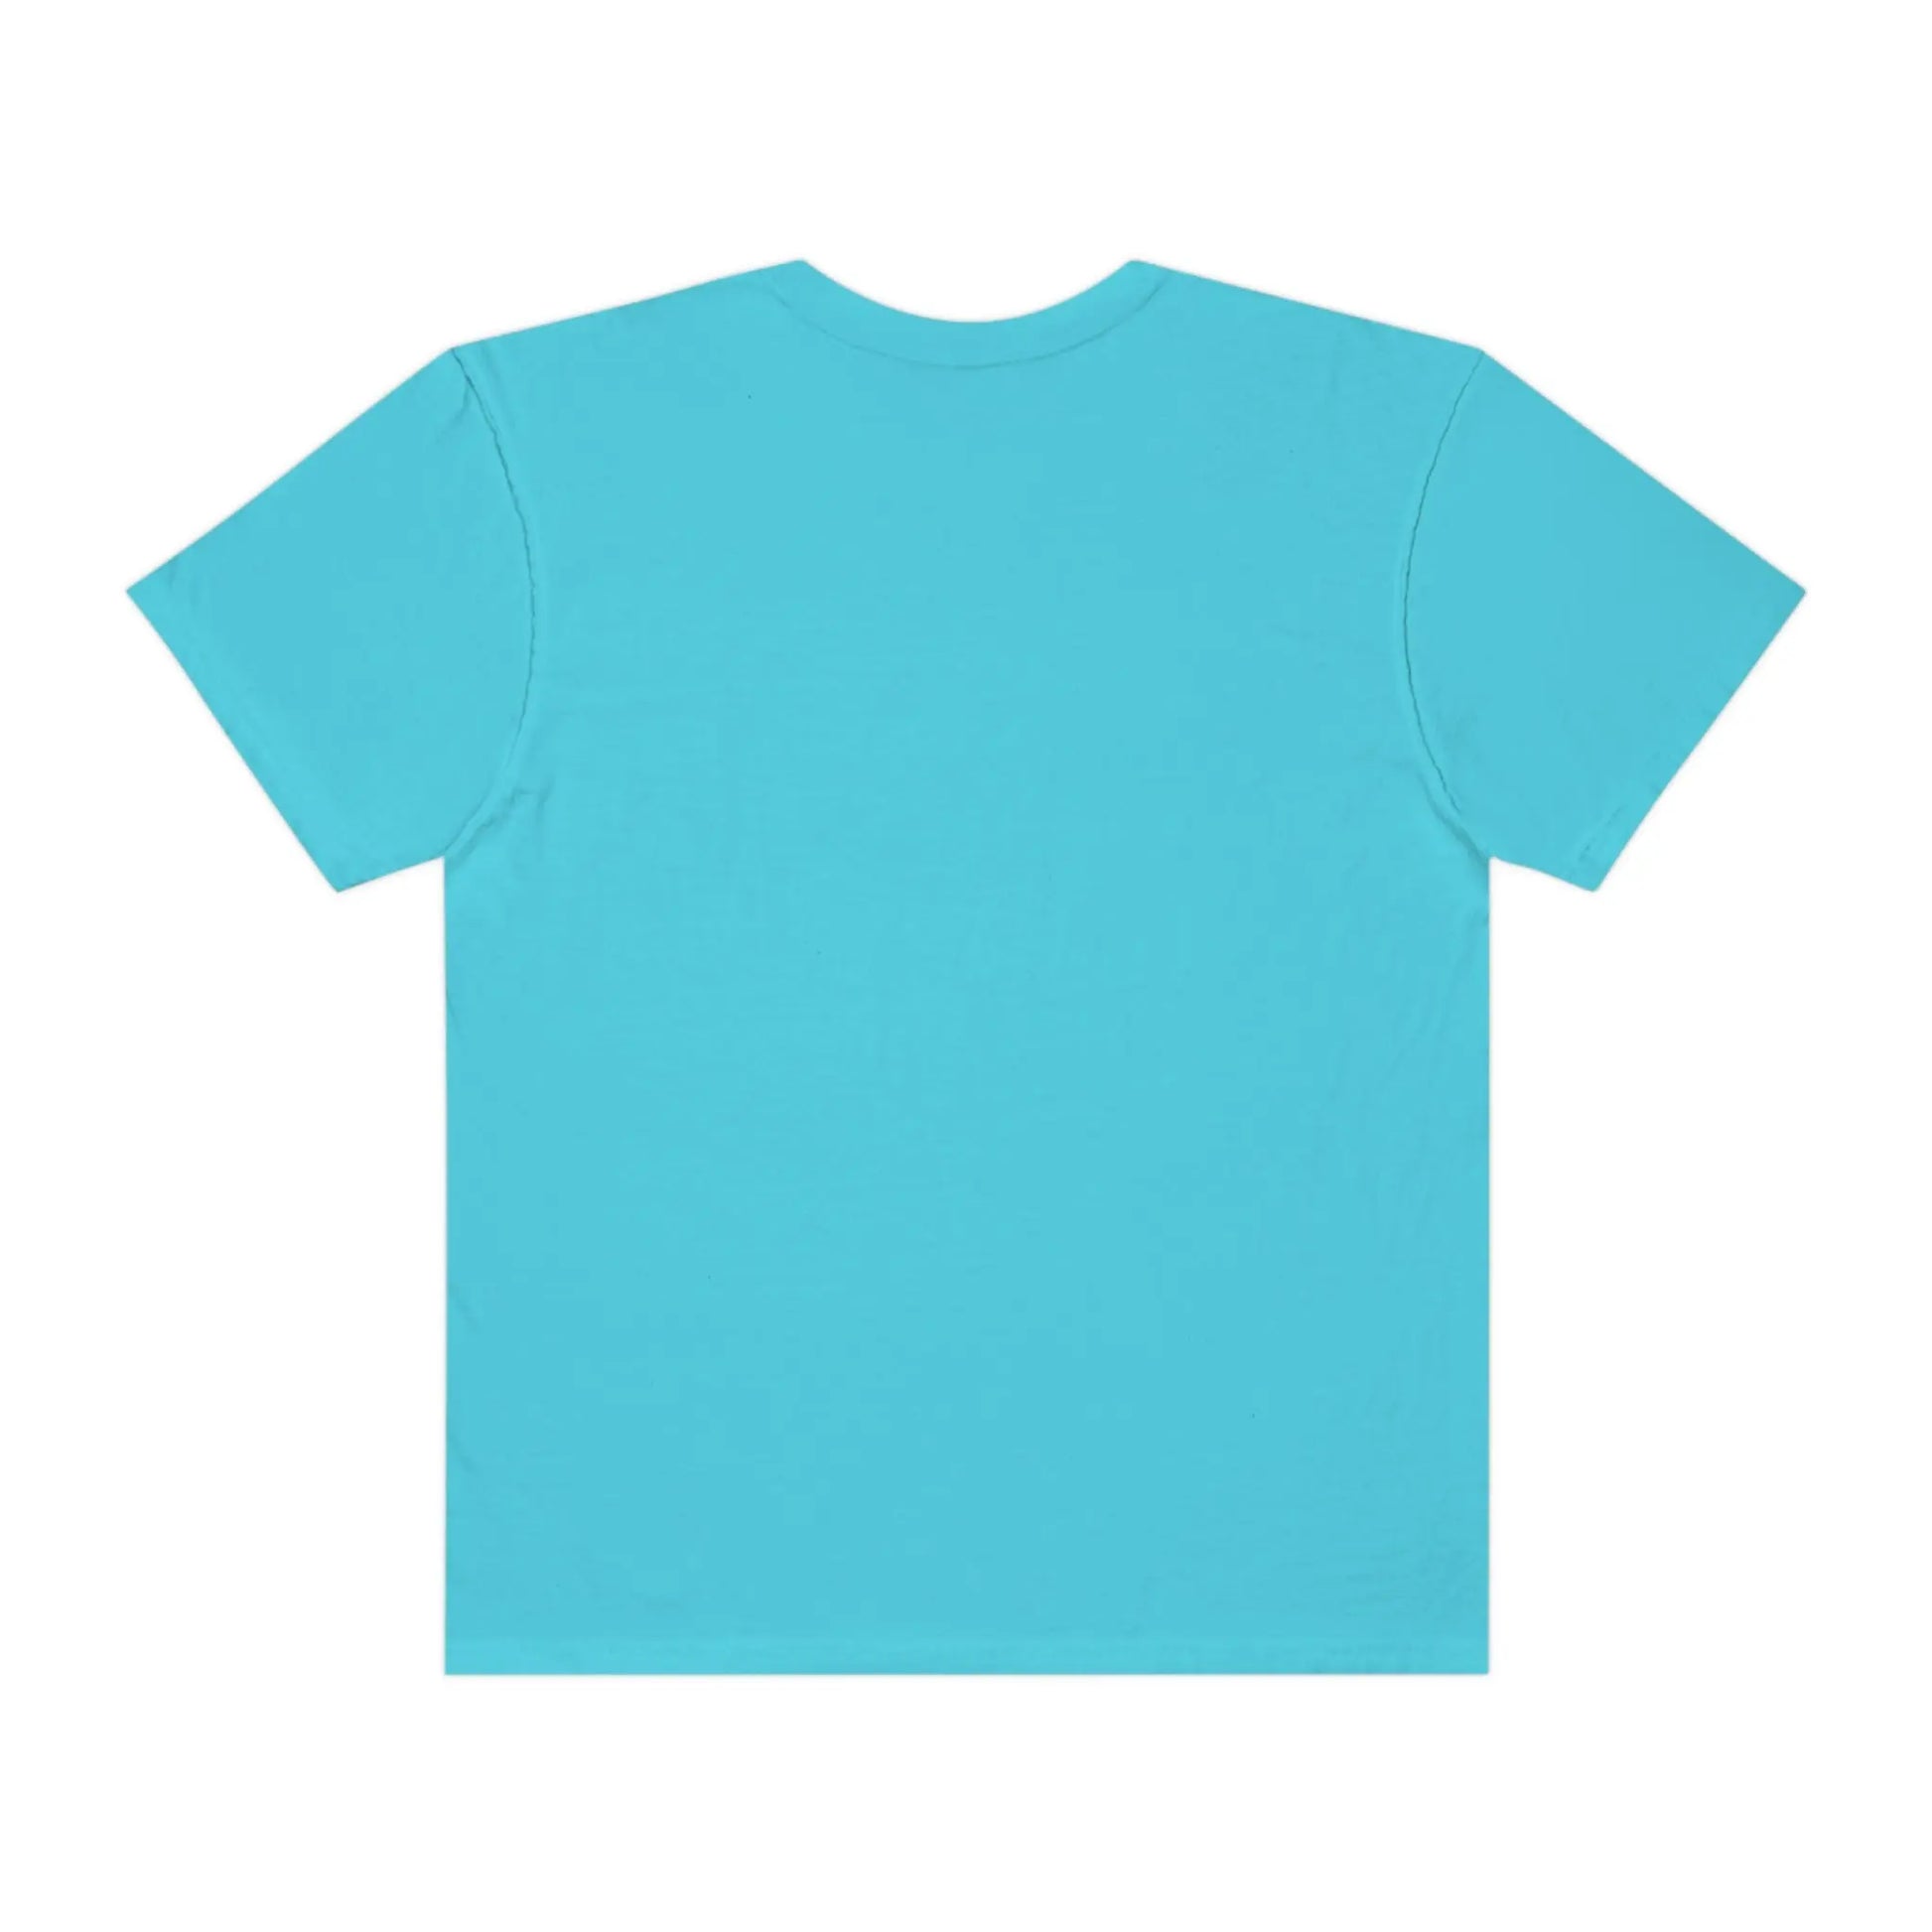 Unisex Garment-Dyed T-shirt - Official primitive store